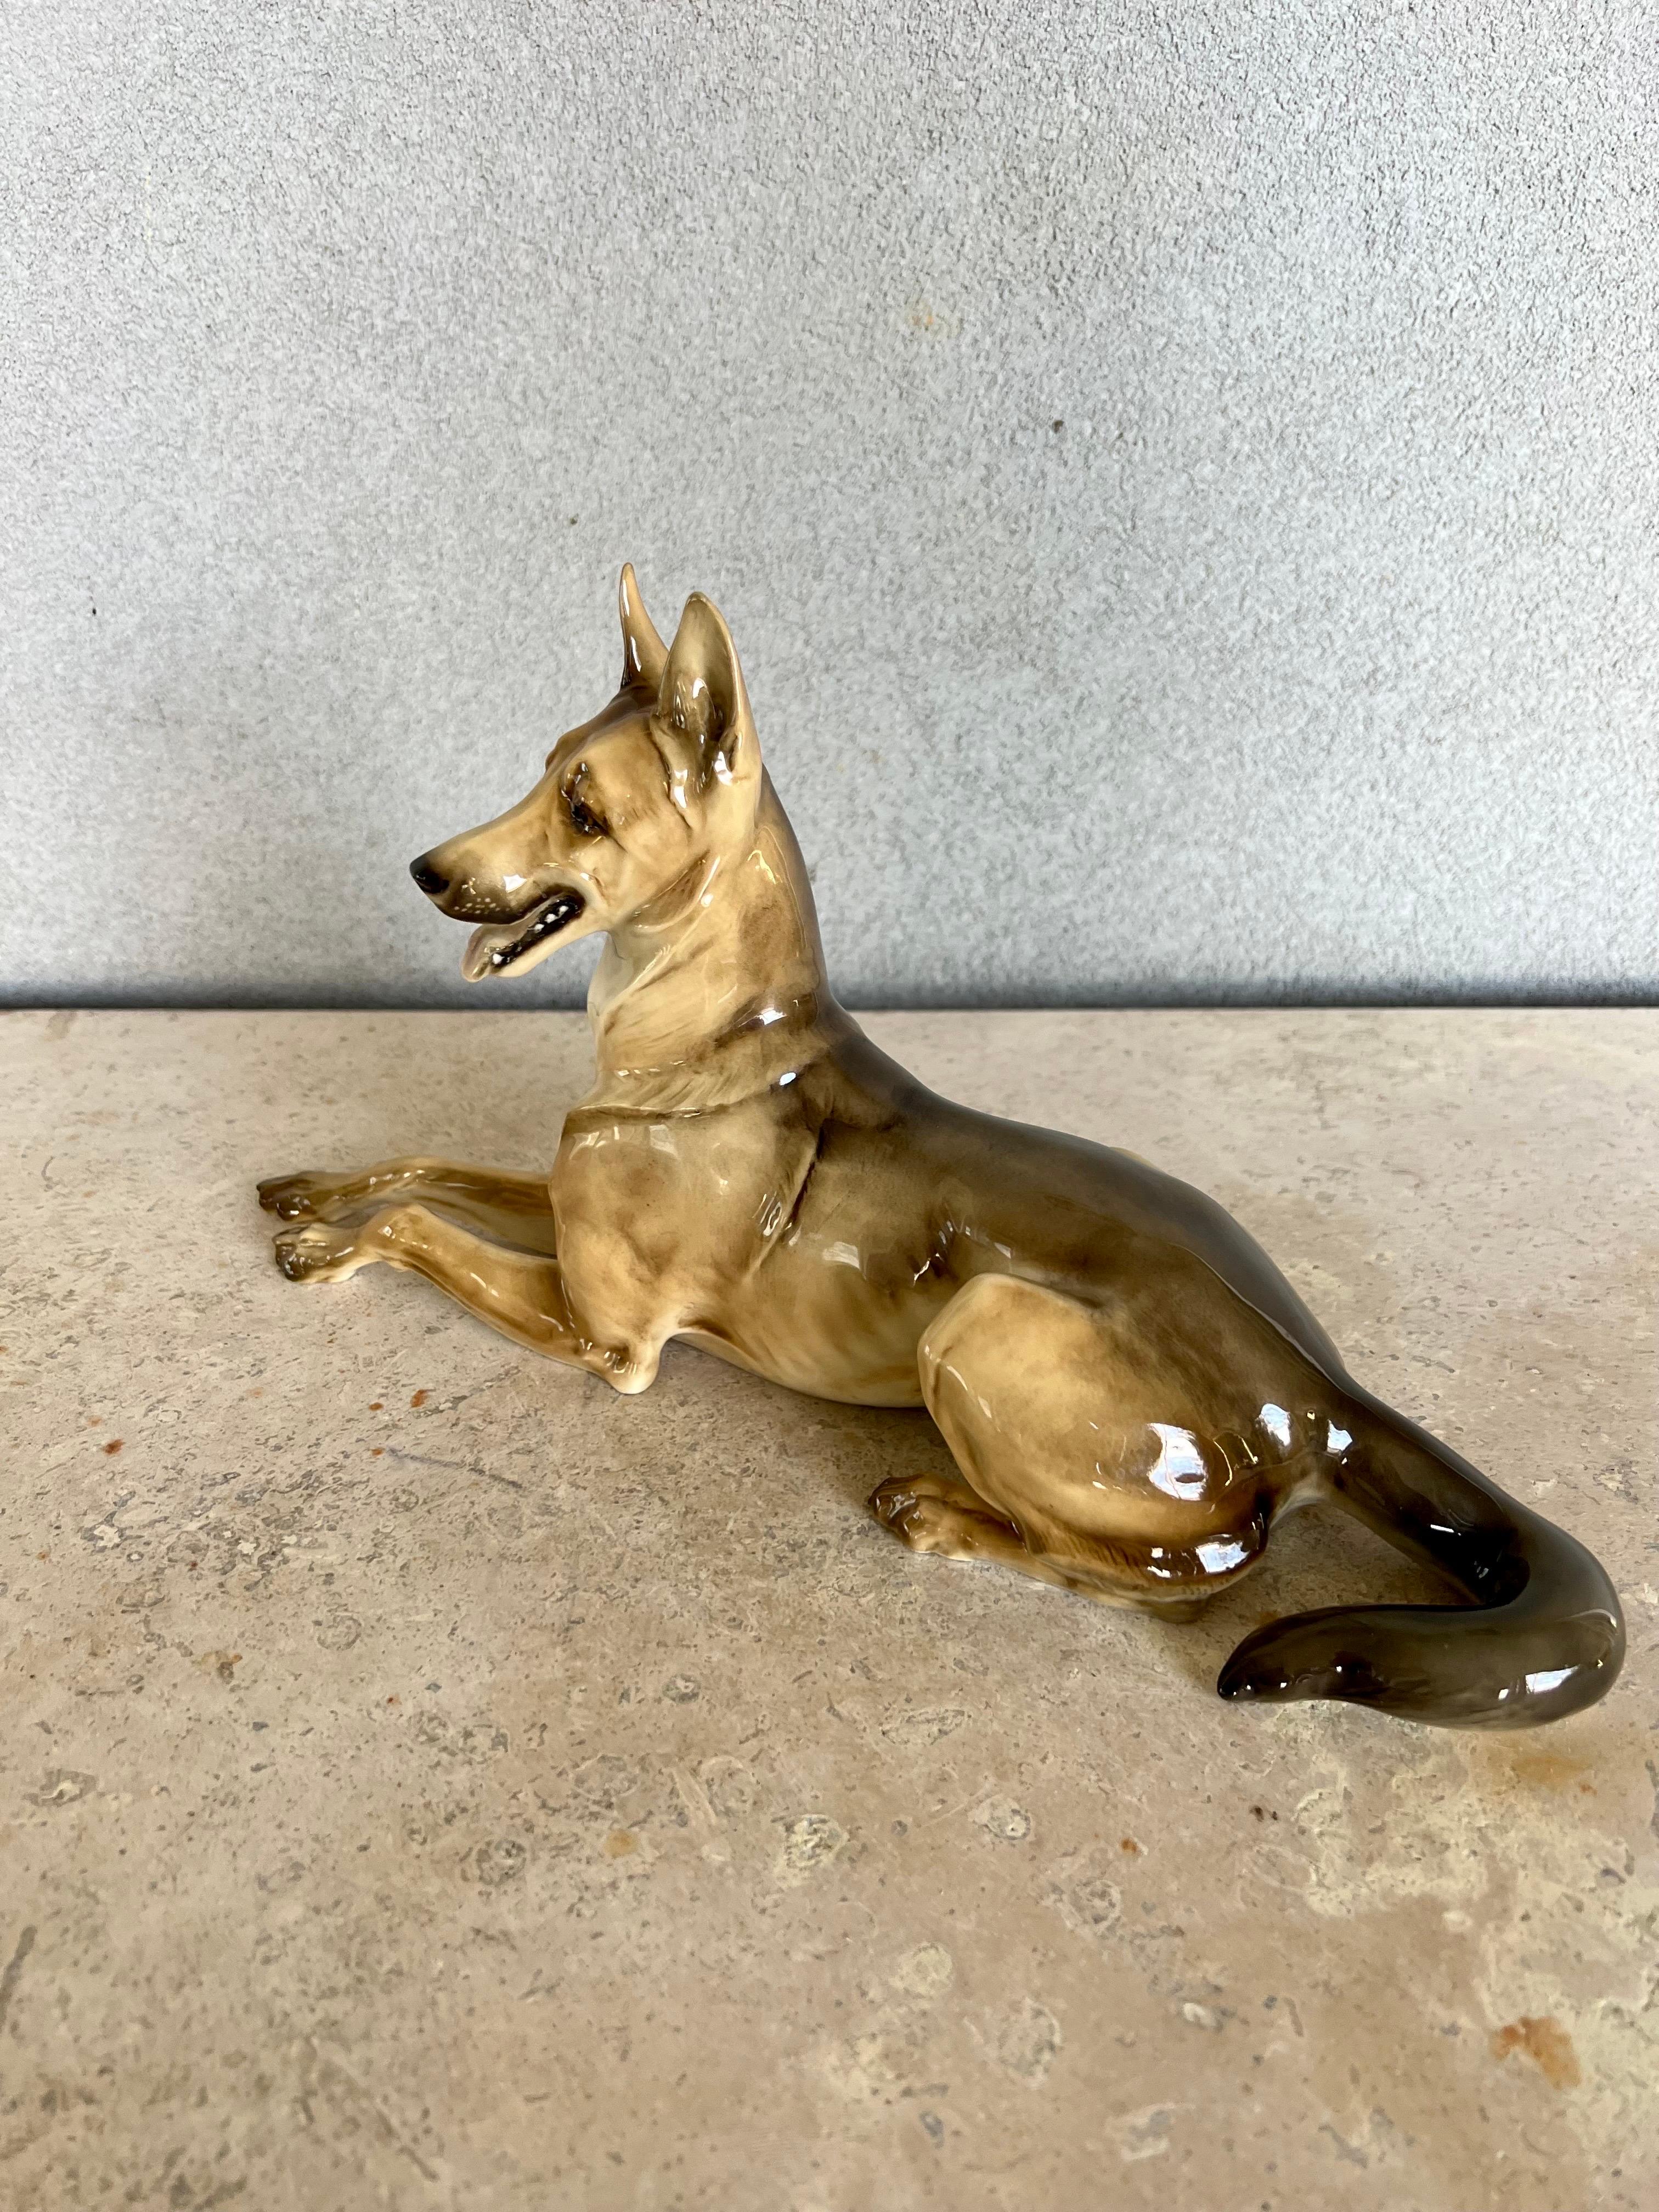 Exquisiter Deutscher Schäferhund aus Porzellan, handbemalt, sehr detailliert. 
hat eine glasierte Oberfläche, die dem Hund ein sehr schönes und scharfes Aussehen verleiht.
Mit Herstellerstempel auf der Unterseite.